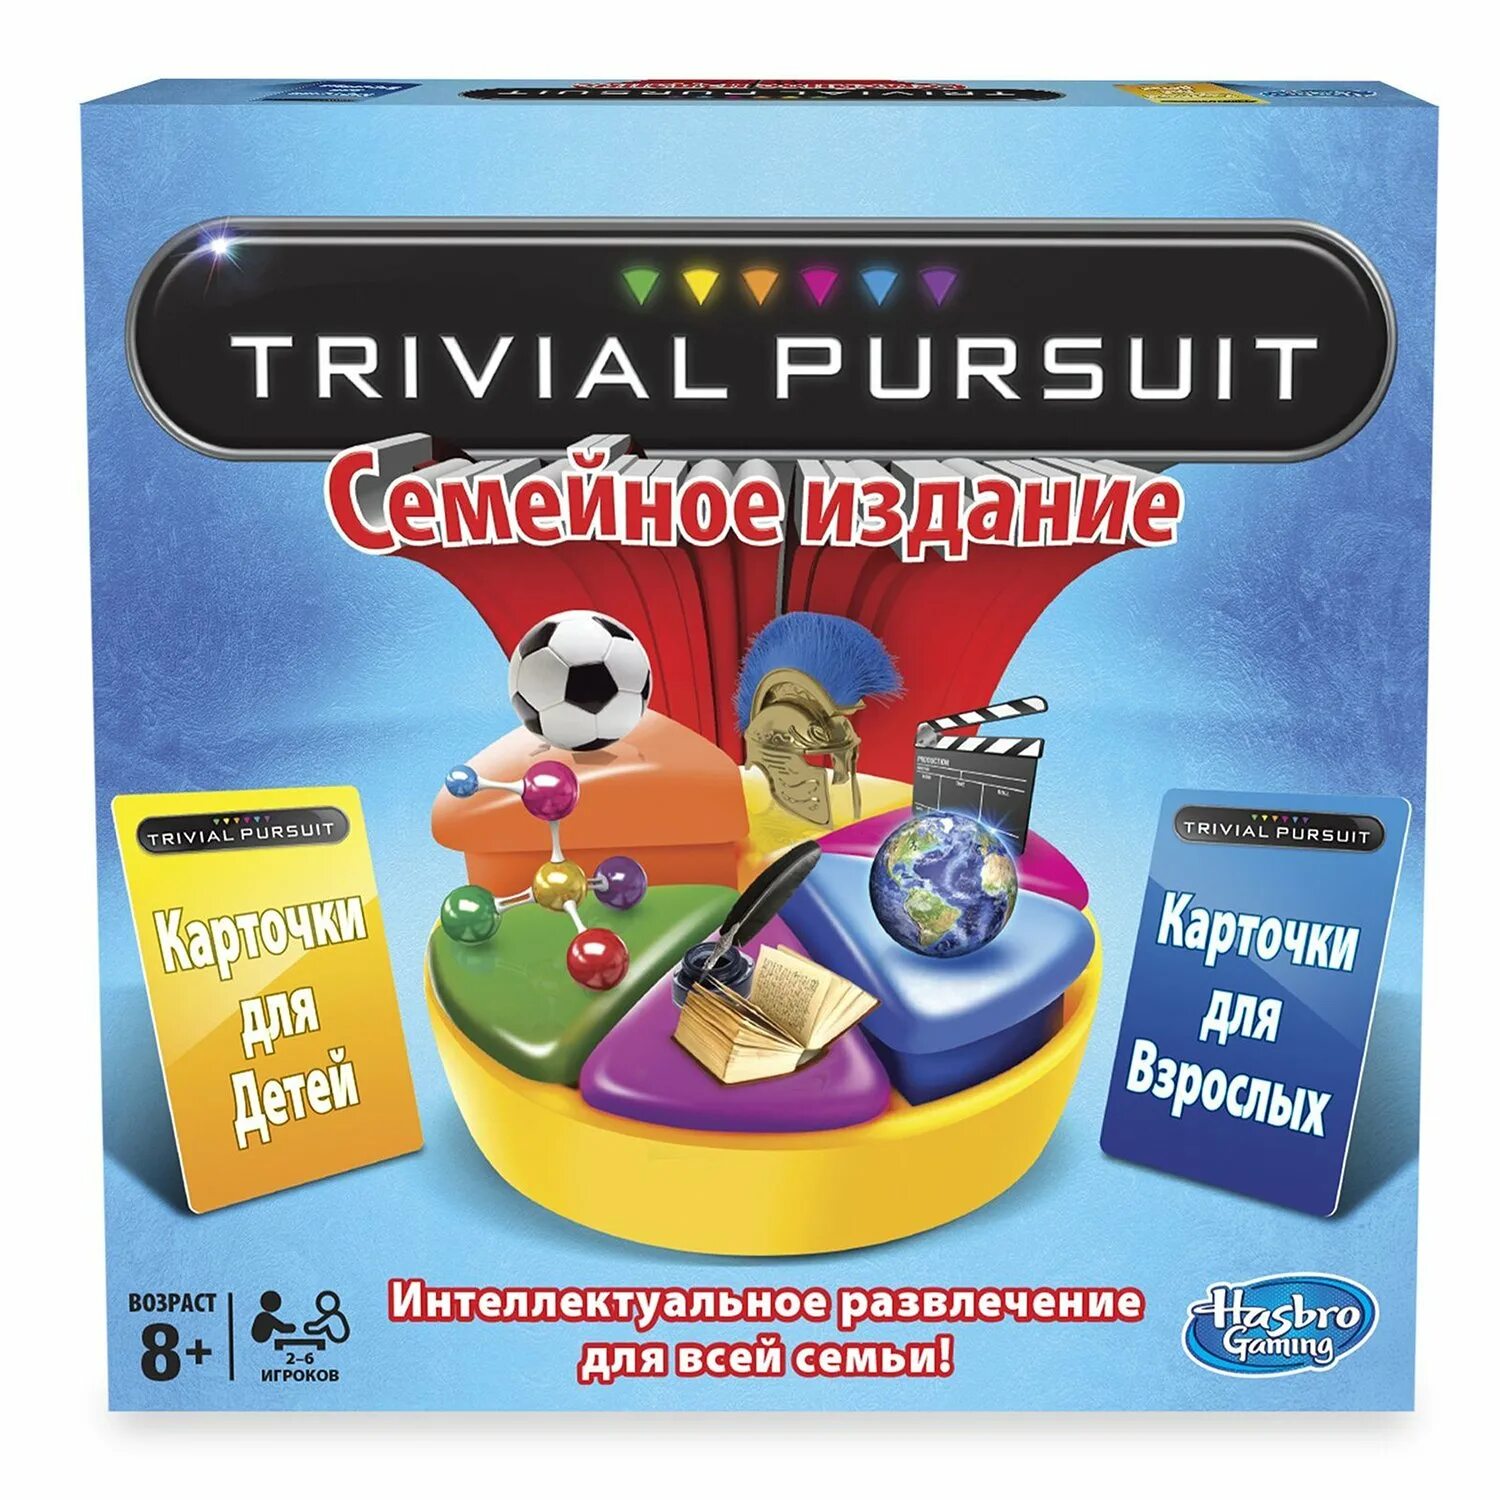 Игра trivial Pursuit. Тривиал персьют настольная. Игры Хасбро Тривиал персьют. Hasbro игры настольная игра Тривиал персьют семейное издание trivial Pursuit.